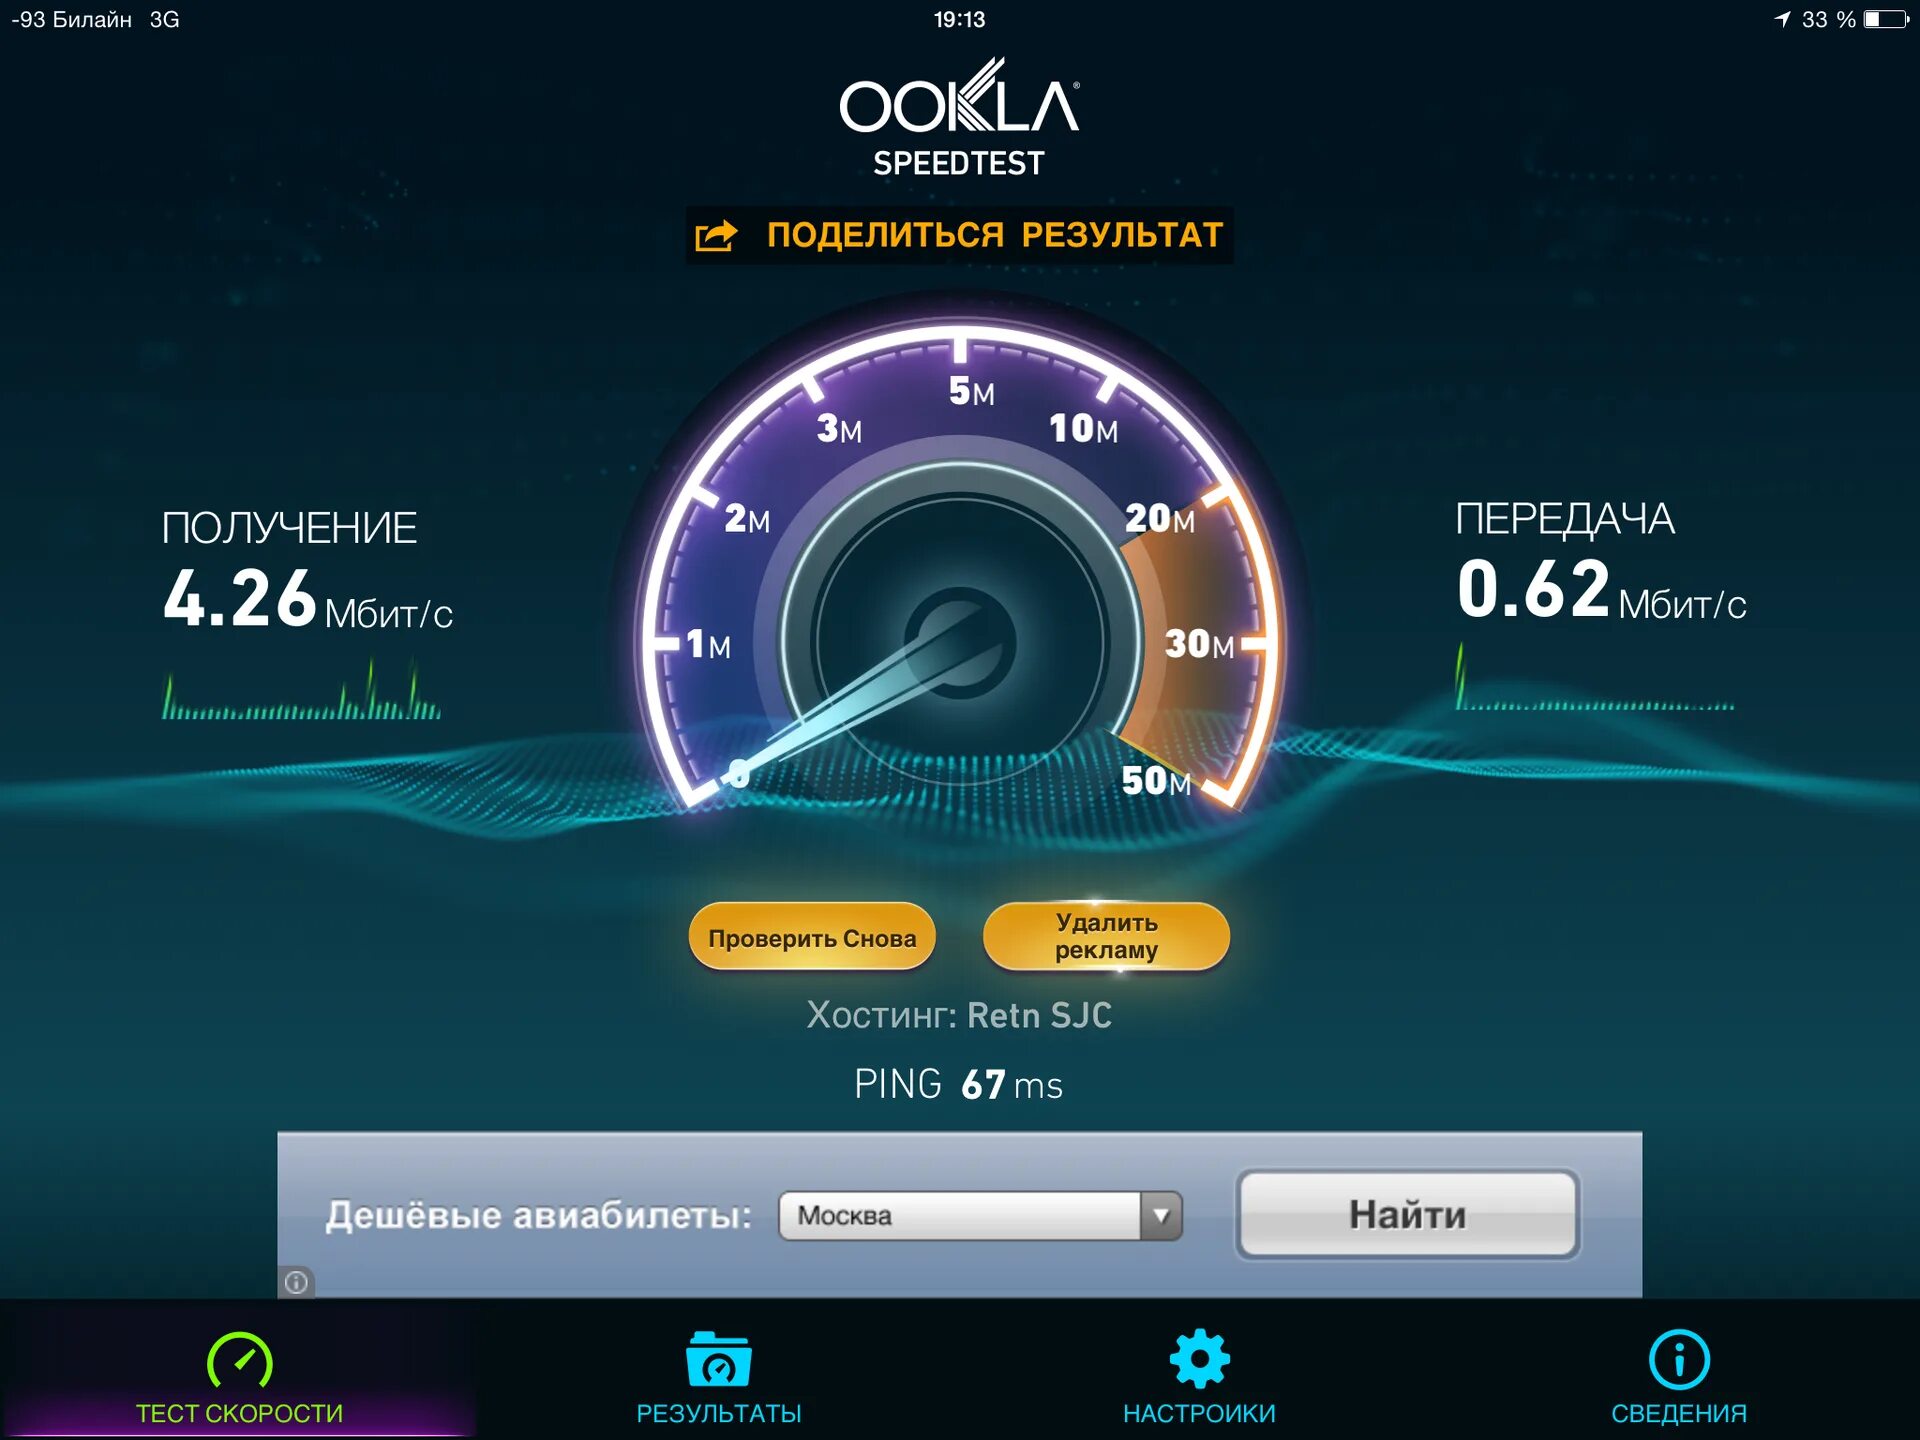 Скоростной интернет. Скорость интернета. Глобальный тест скорости интернета.